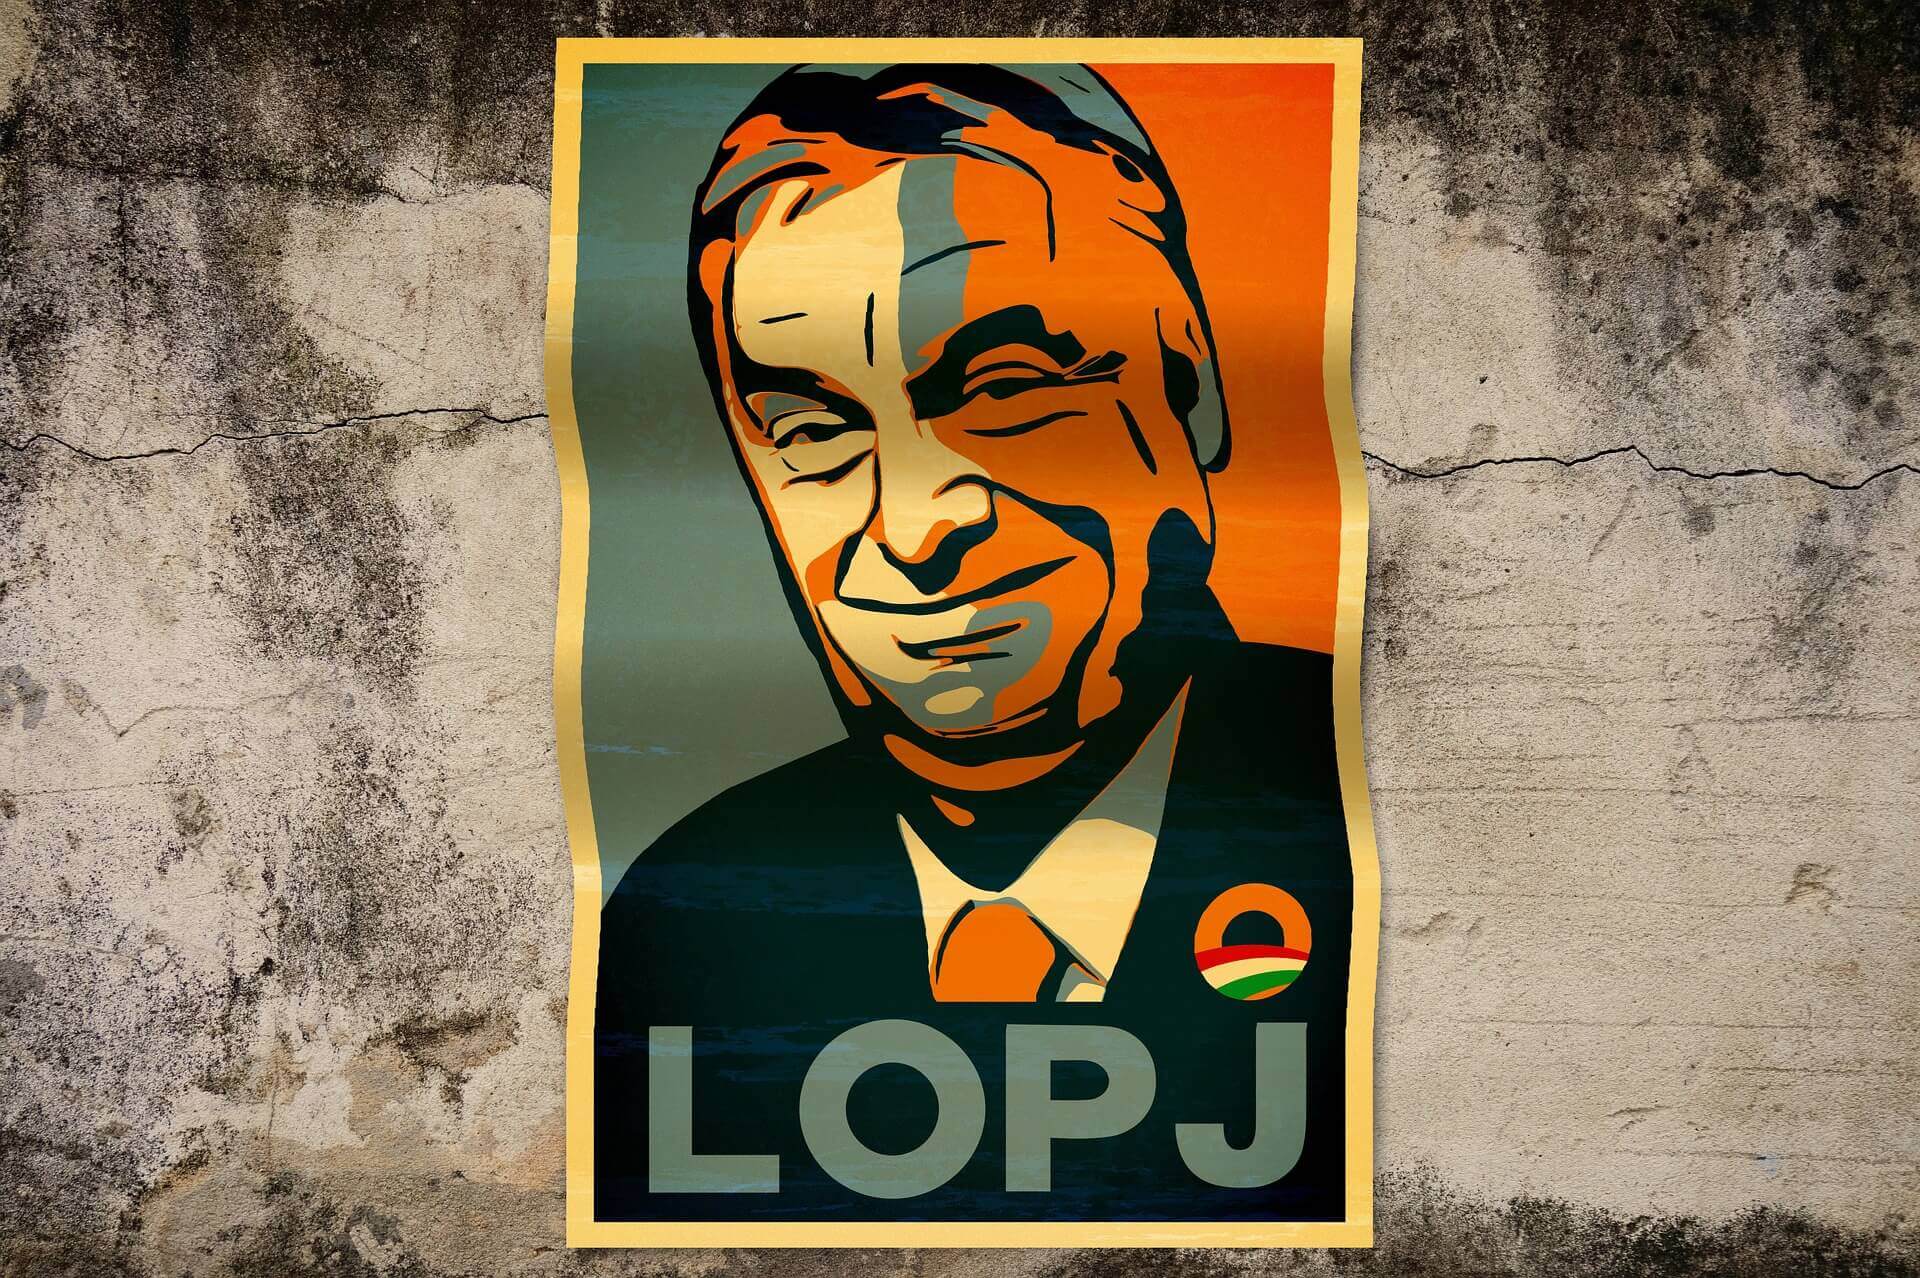 Adieu Demokratie – So übernimmt Orban die totale Kontrolle in Ungarn